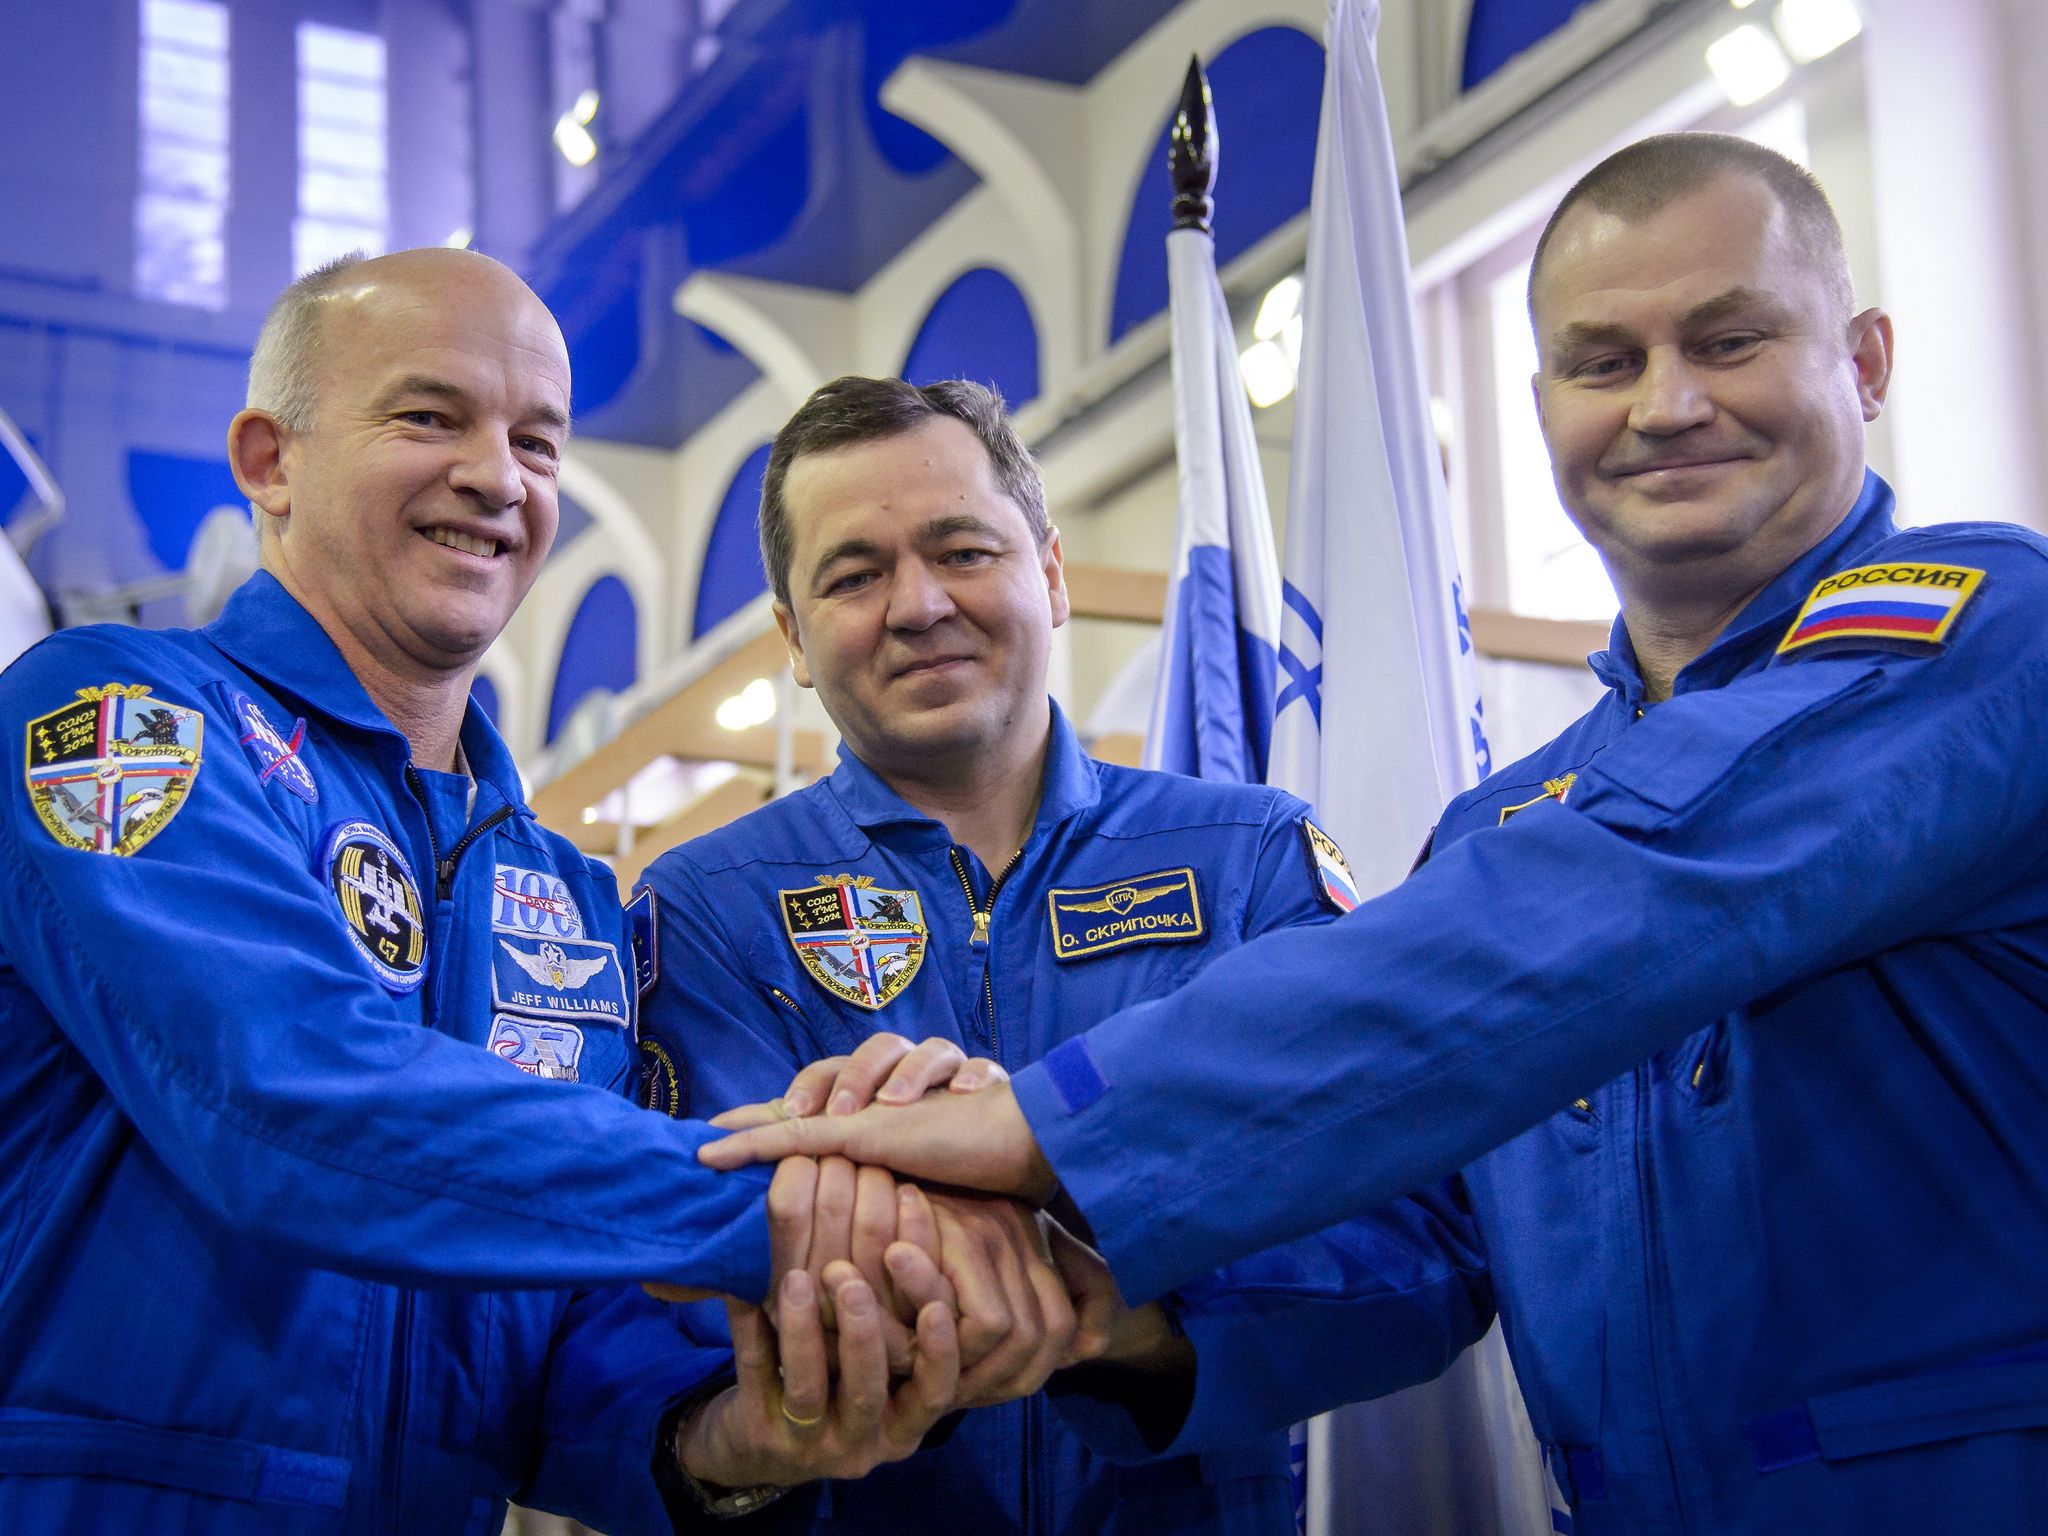 L'équipage du Soyouz TMA-20M, le 24 Février 2016, avant leur examen de qualification Soyouz. De gauche à droite : Jeff Williams (NASA), Oleg Skripochka et Alexey Ovchinin (Roscosmos). (Crédit photo : NASA/Bill Ingalls)